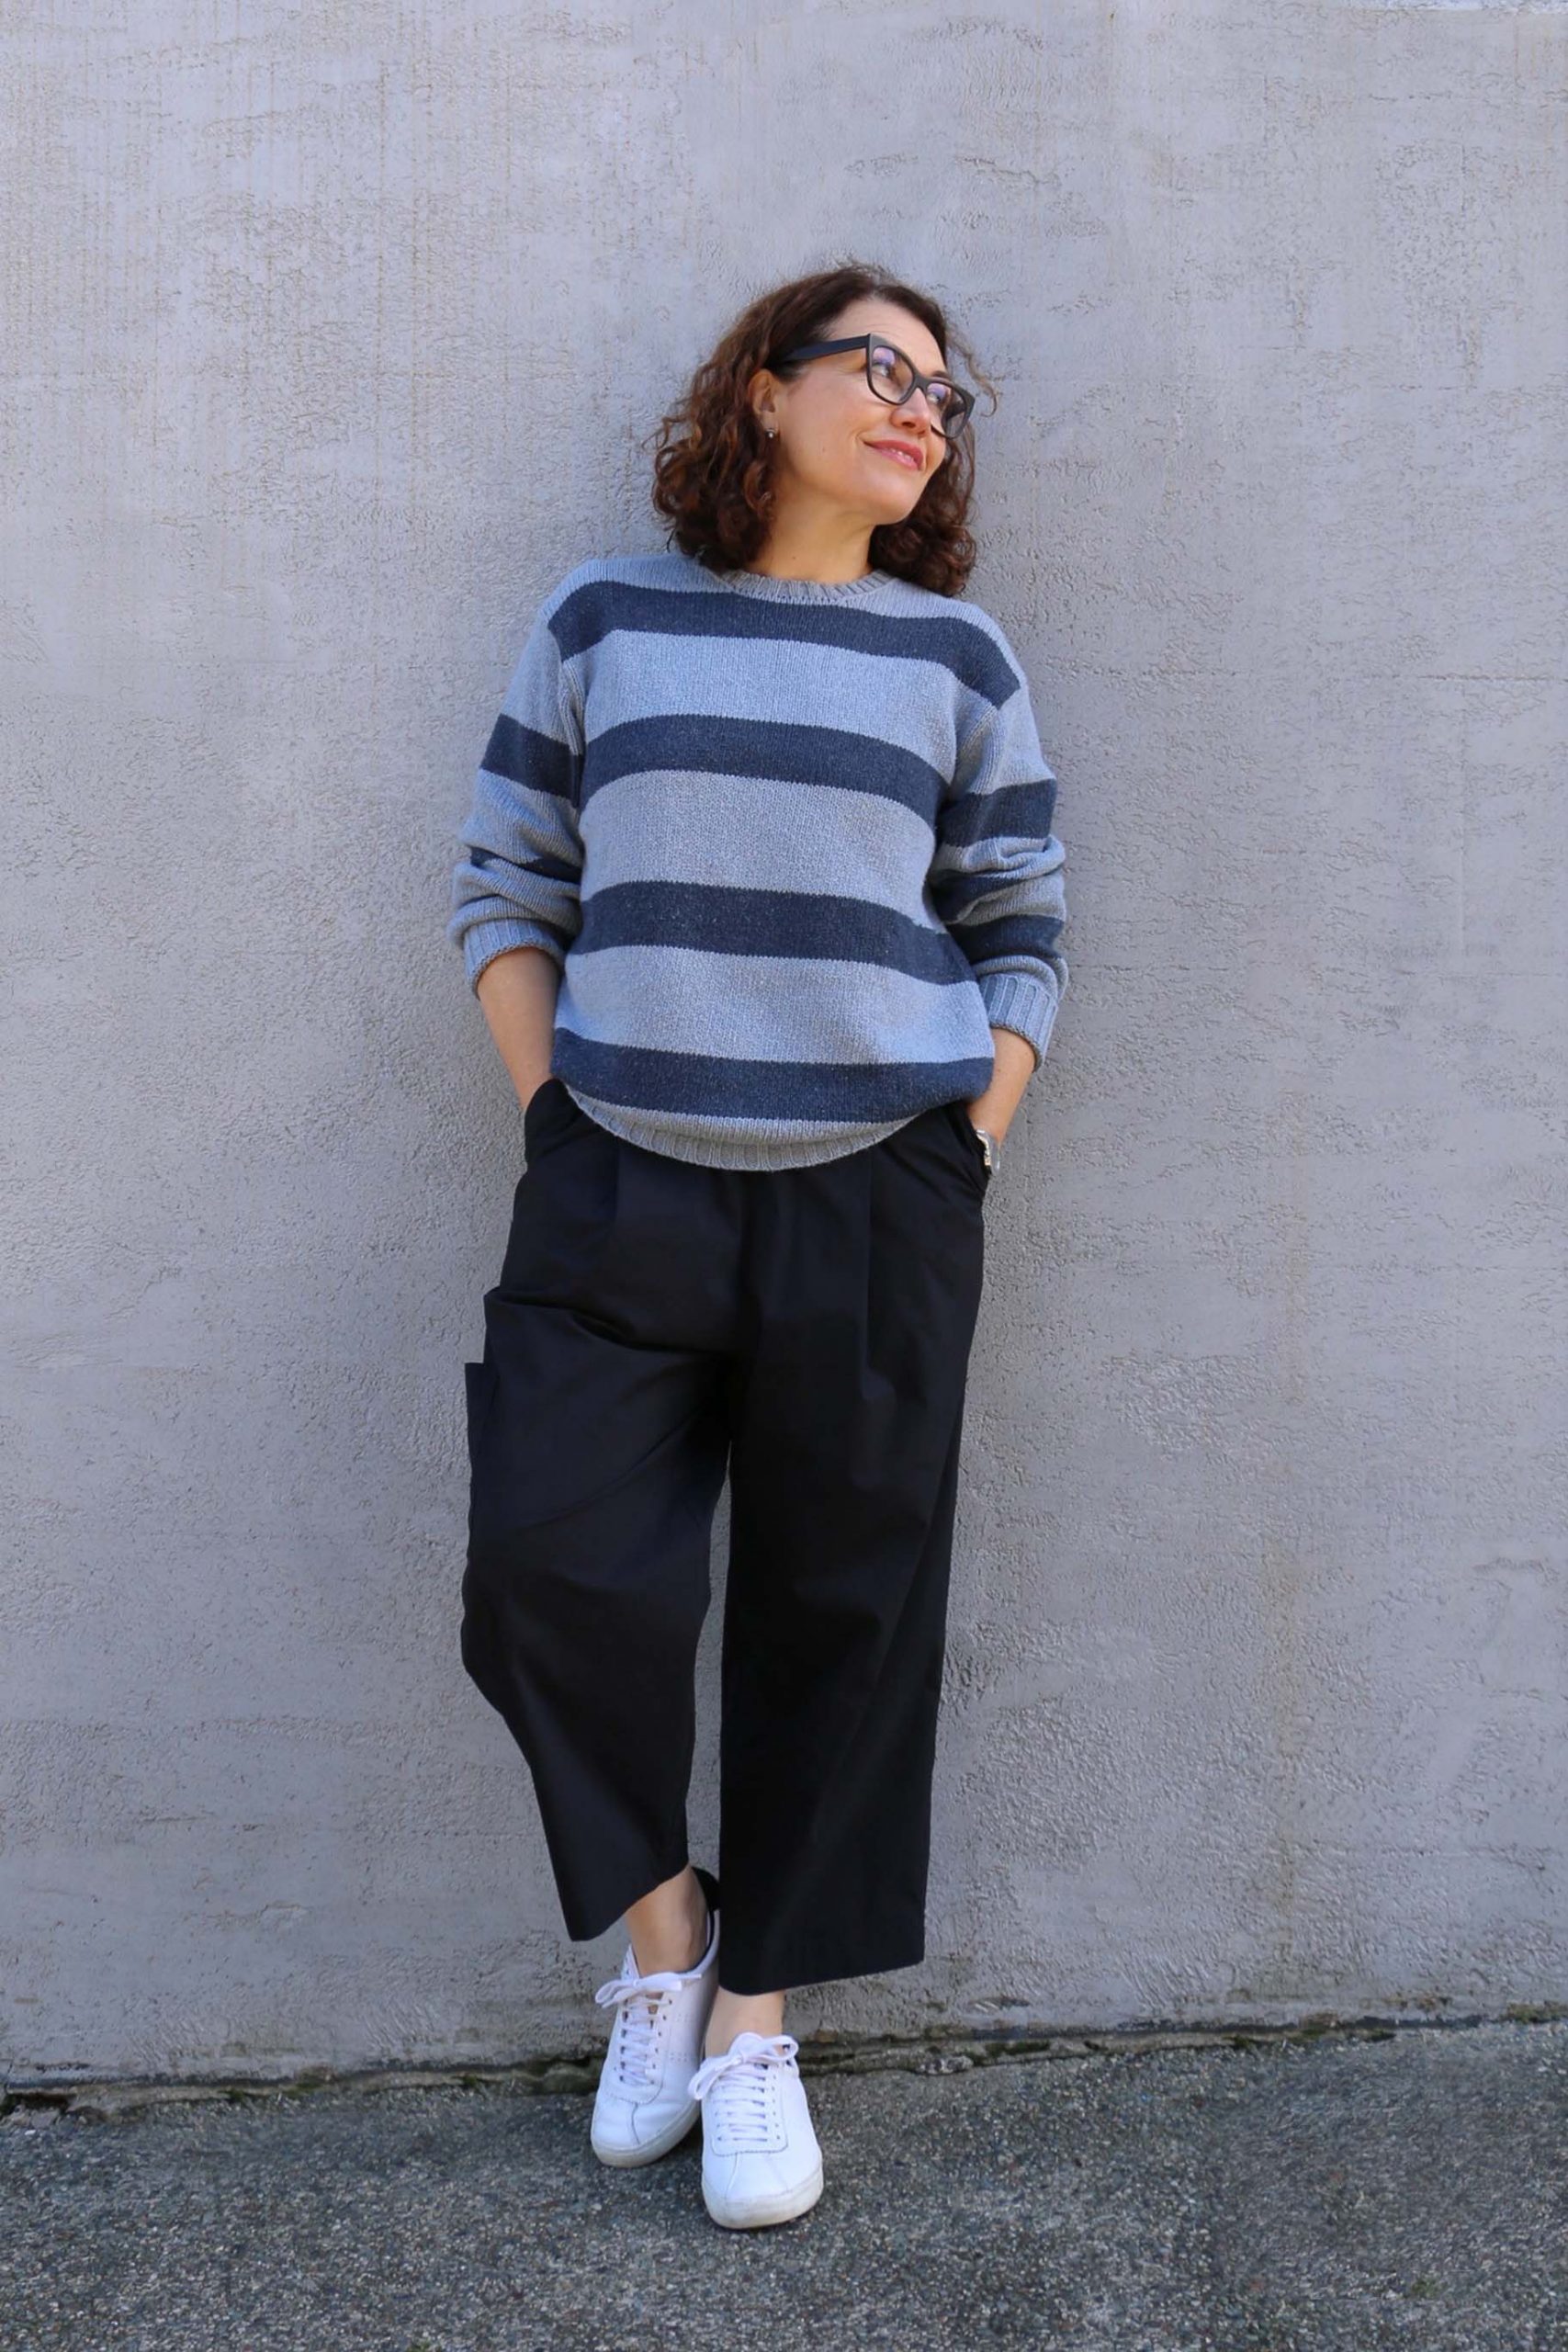 Introducing the Naia Pants Pattern - Sew Tessuti Blog